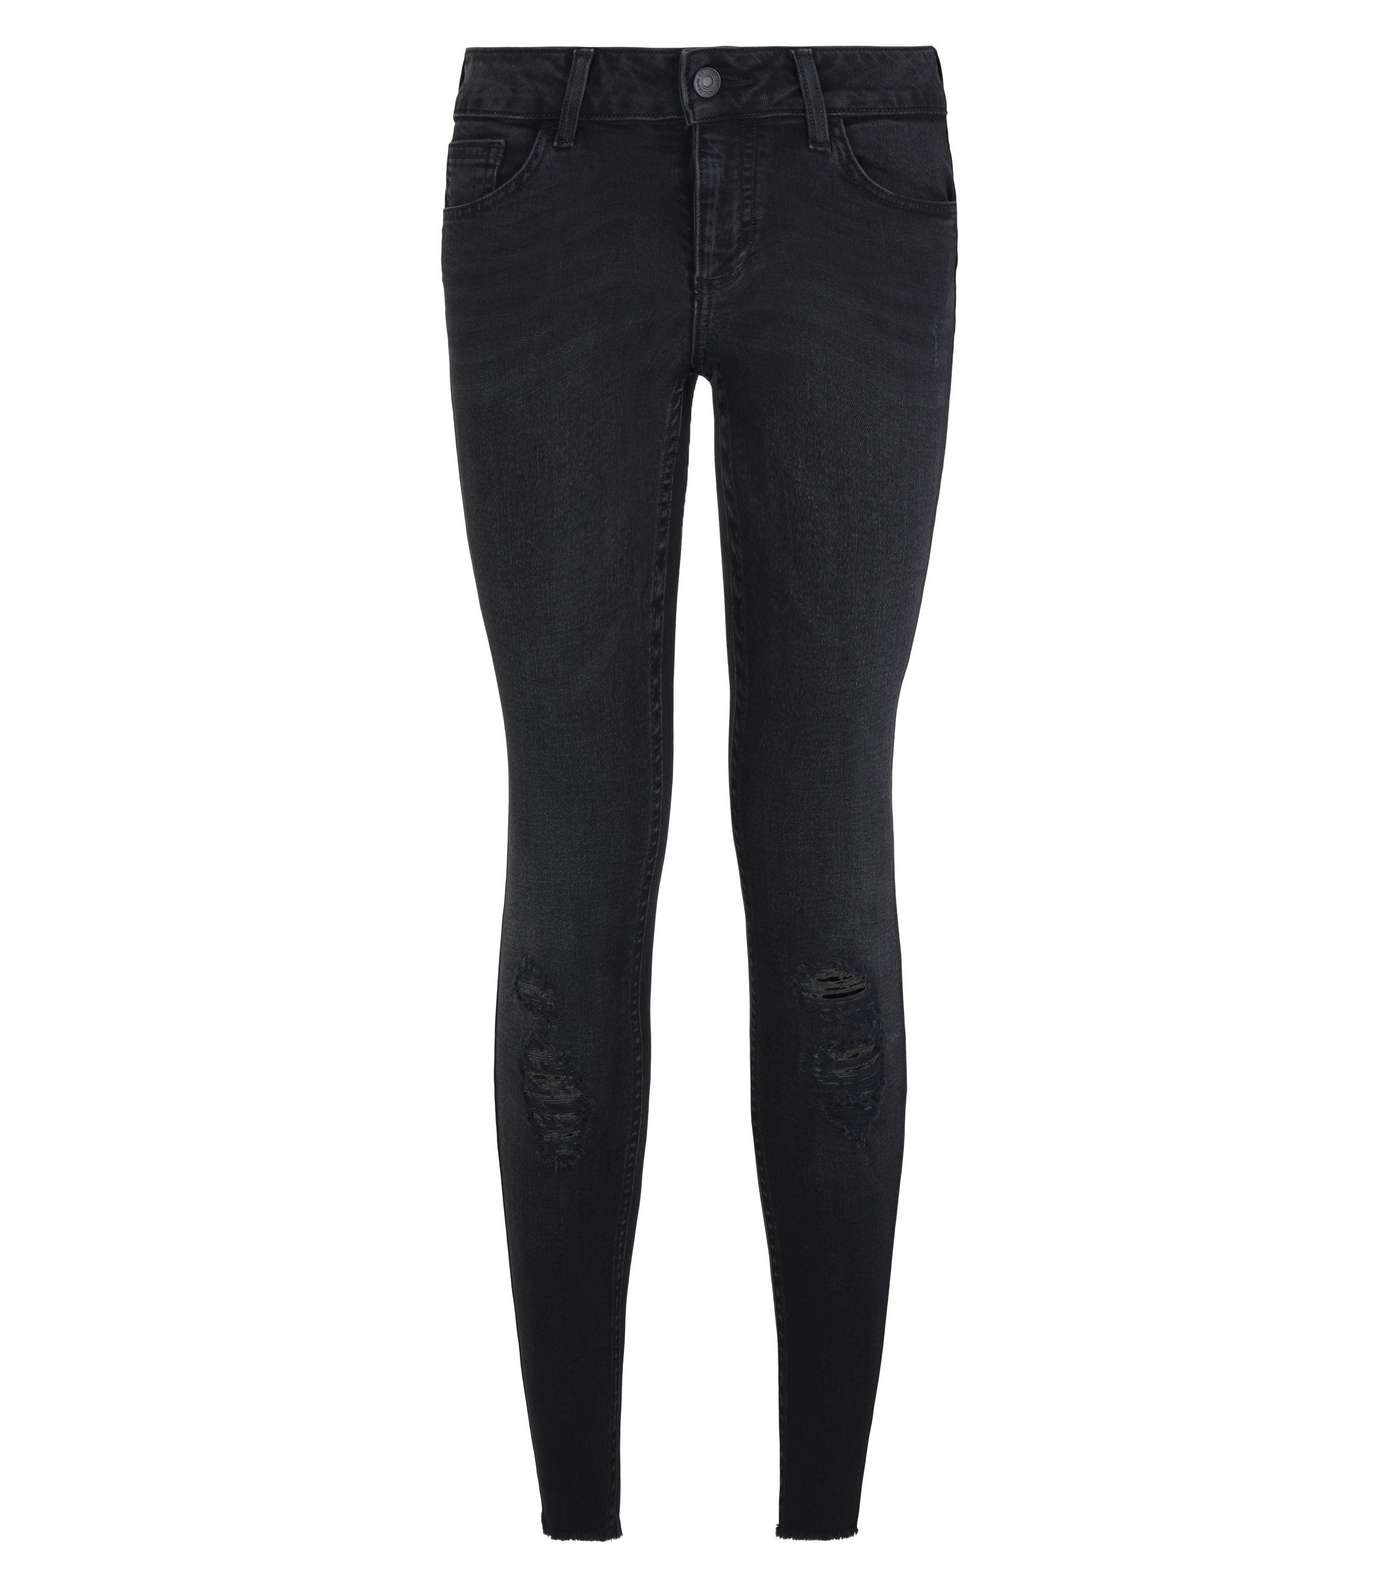 Petite Black 'Lift & Shape' High Rise Ripped Jeans Image 4